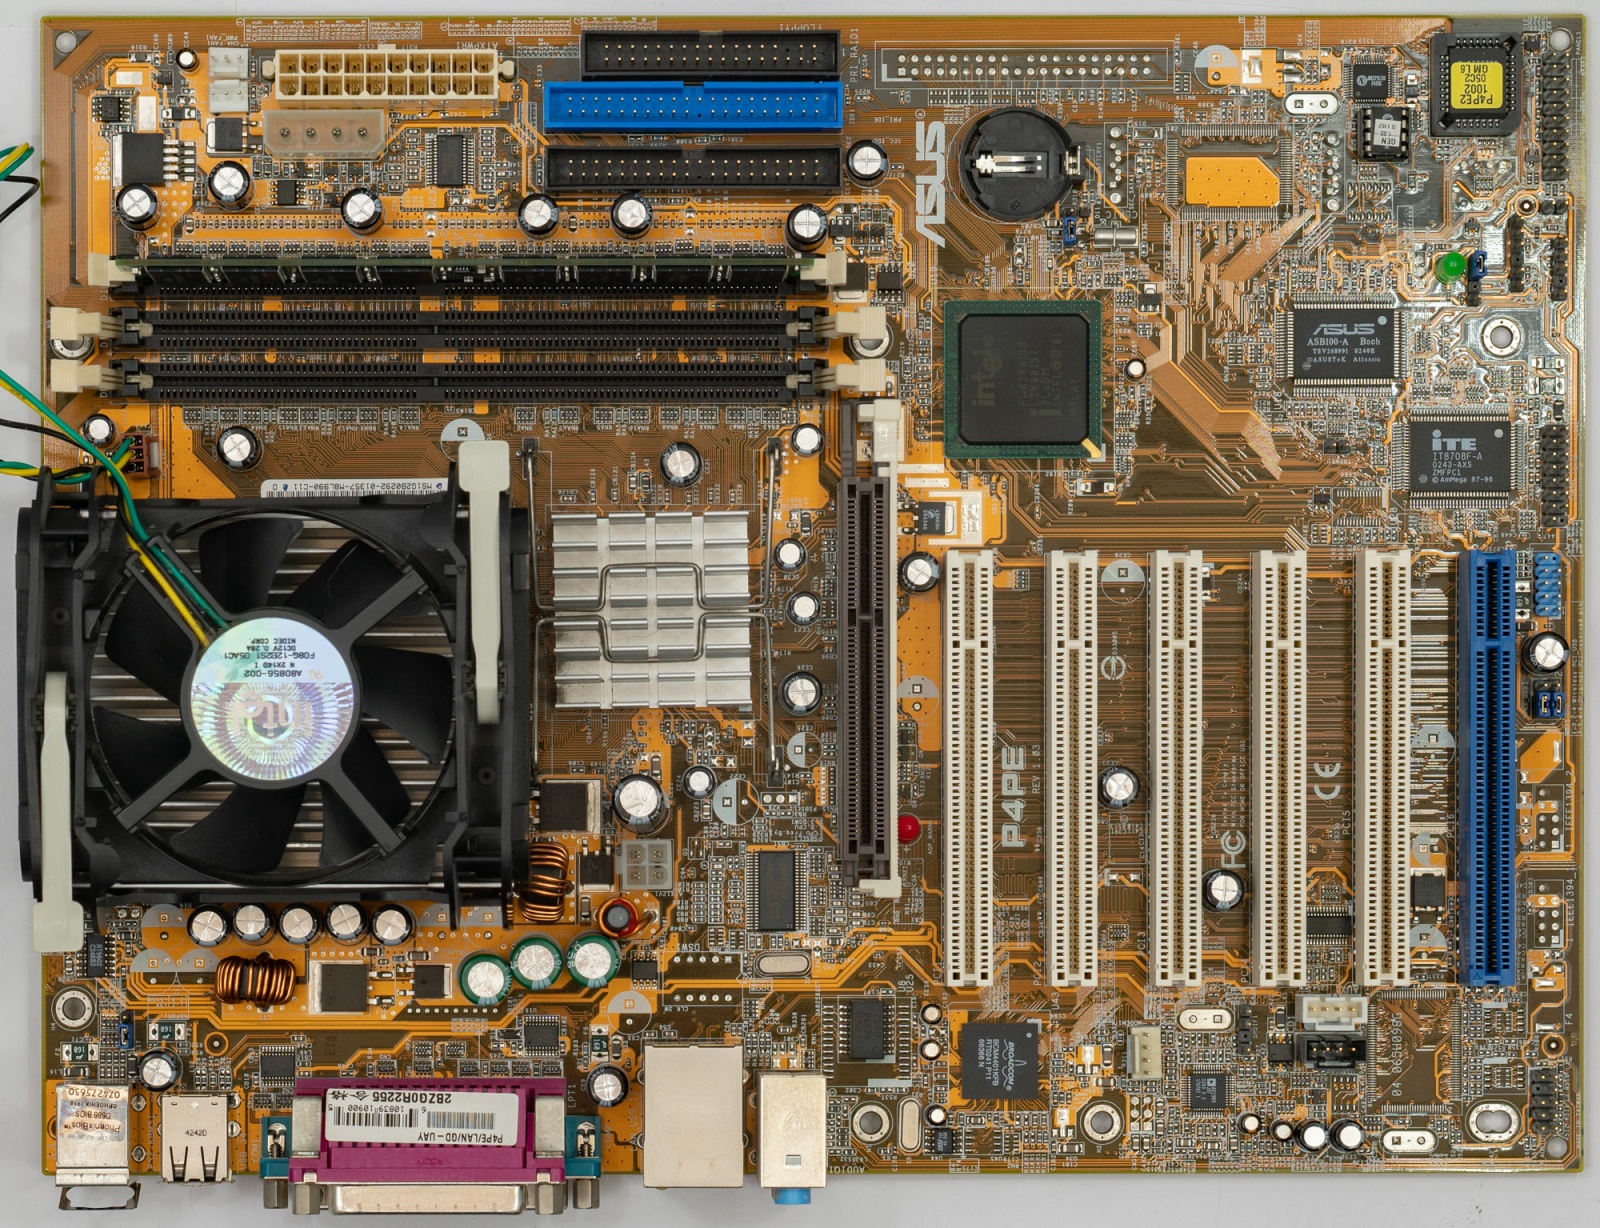 Горячий Pentium 4 и народная любовь - 4